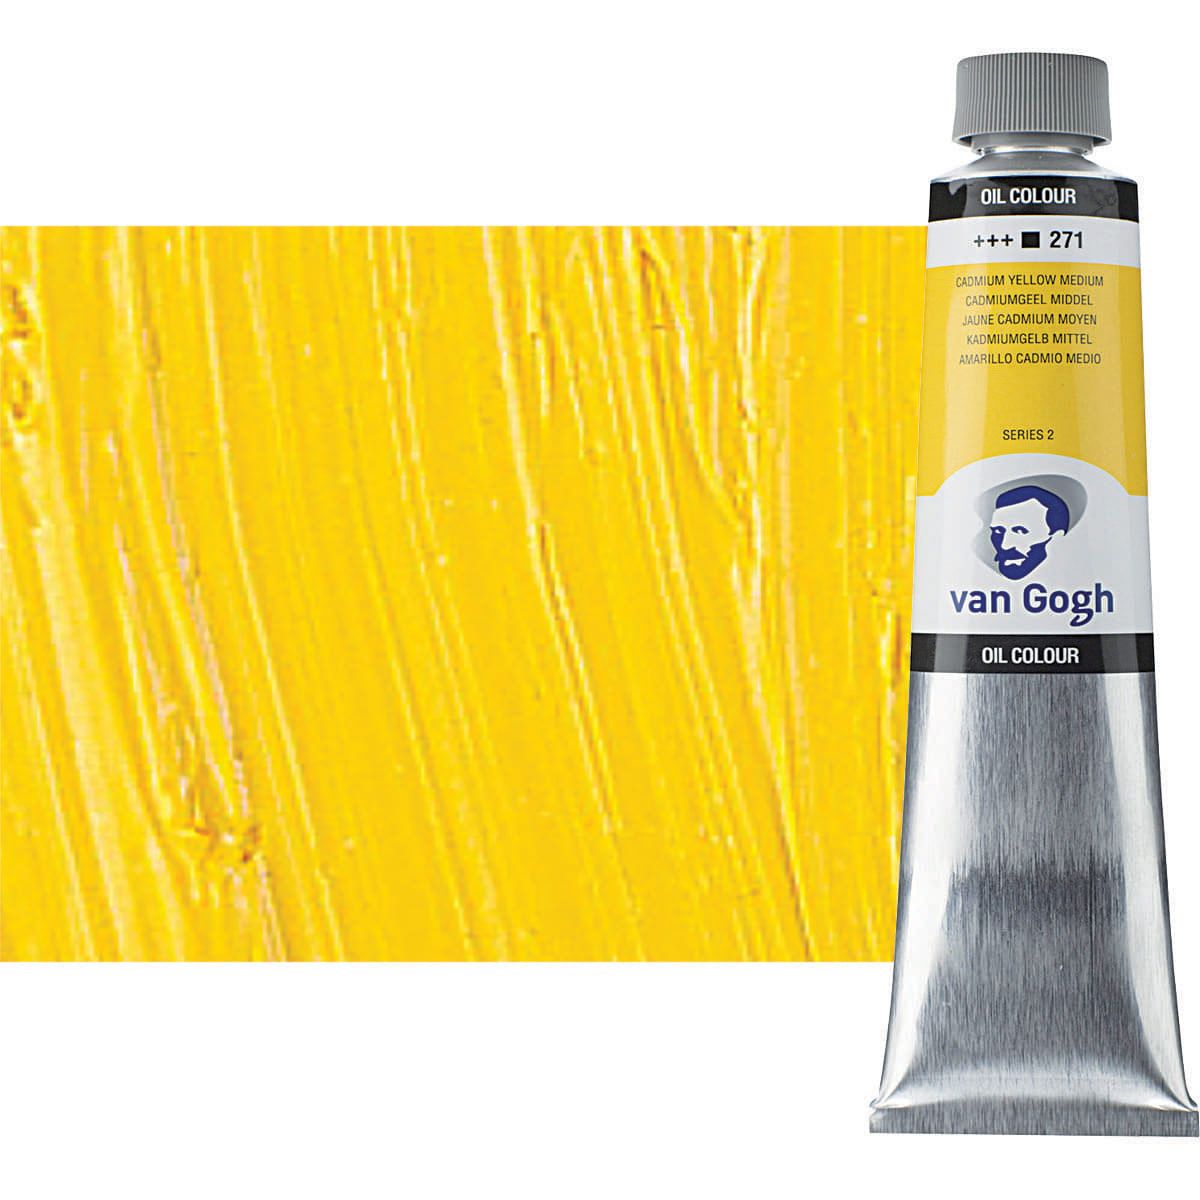 Van Gogh Oil Color, Cadmium Yellow Medium 40ml Tube